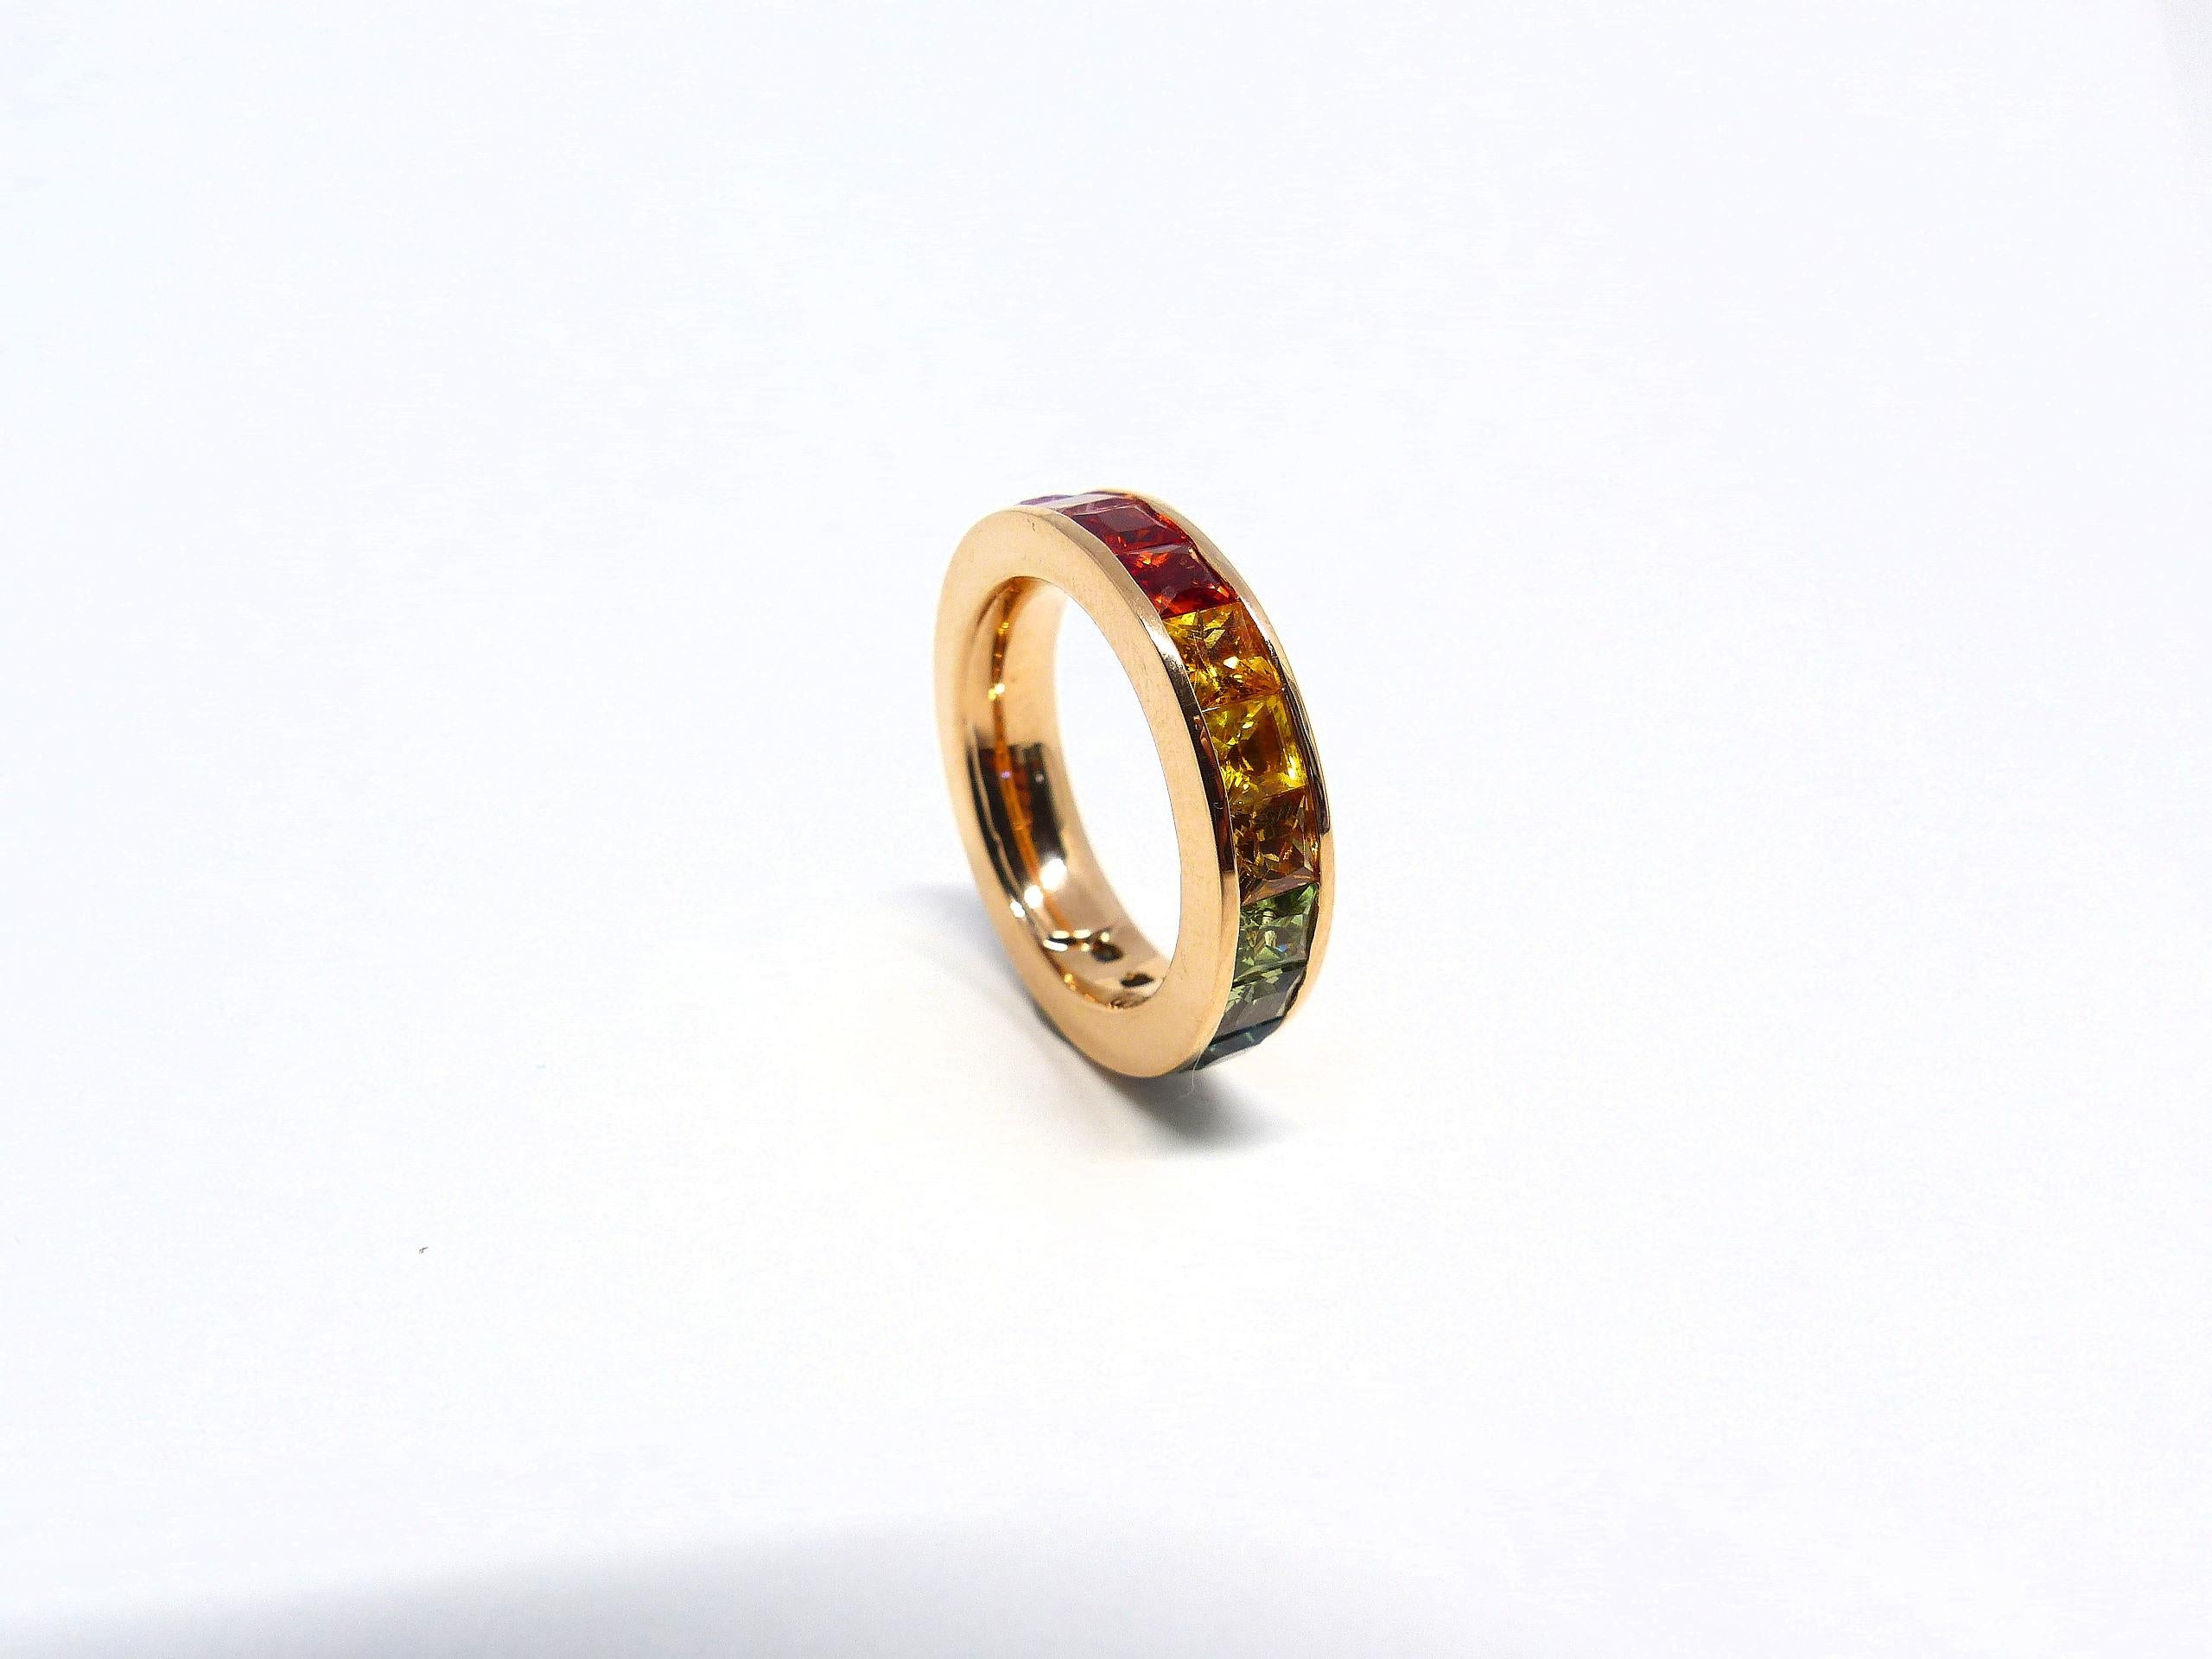 Thomas Leyser ist bekannt für seine zeitgenössischen Schmuckentwürfe unter Verwendung edler Edelsteine.

Dieser Ring aus 18 Karat Roségold (7,95 g) ist mit 21 feinen mehrfarbigen Saphiren (Prinzess-Schliff, 3 mm, 4,04ct) besetzt.

Ringgröße 53 (6